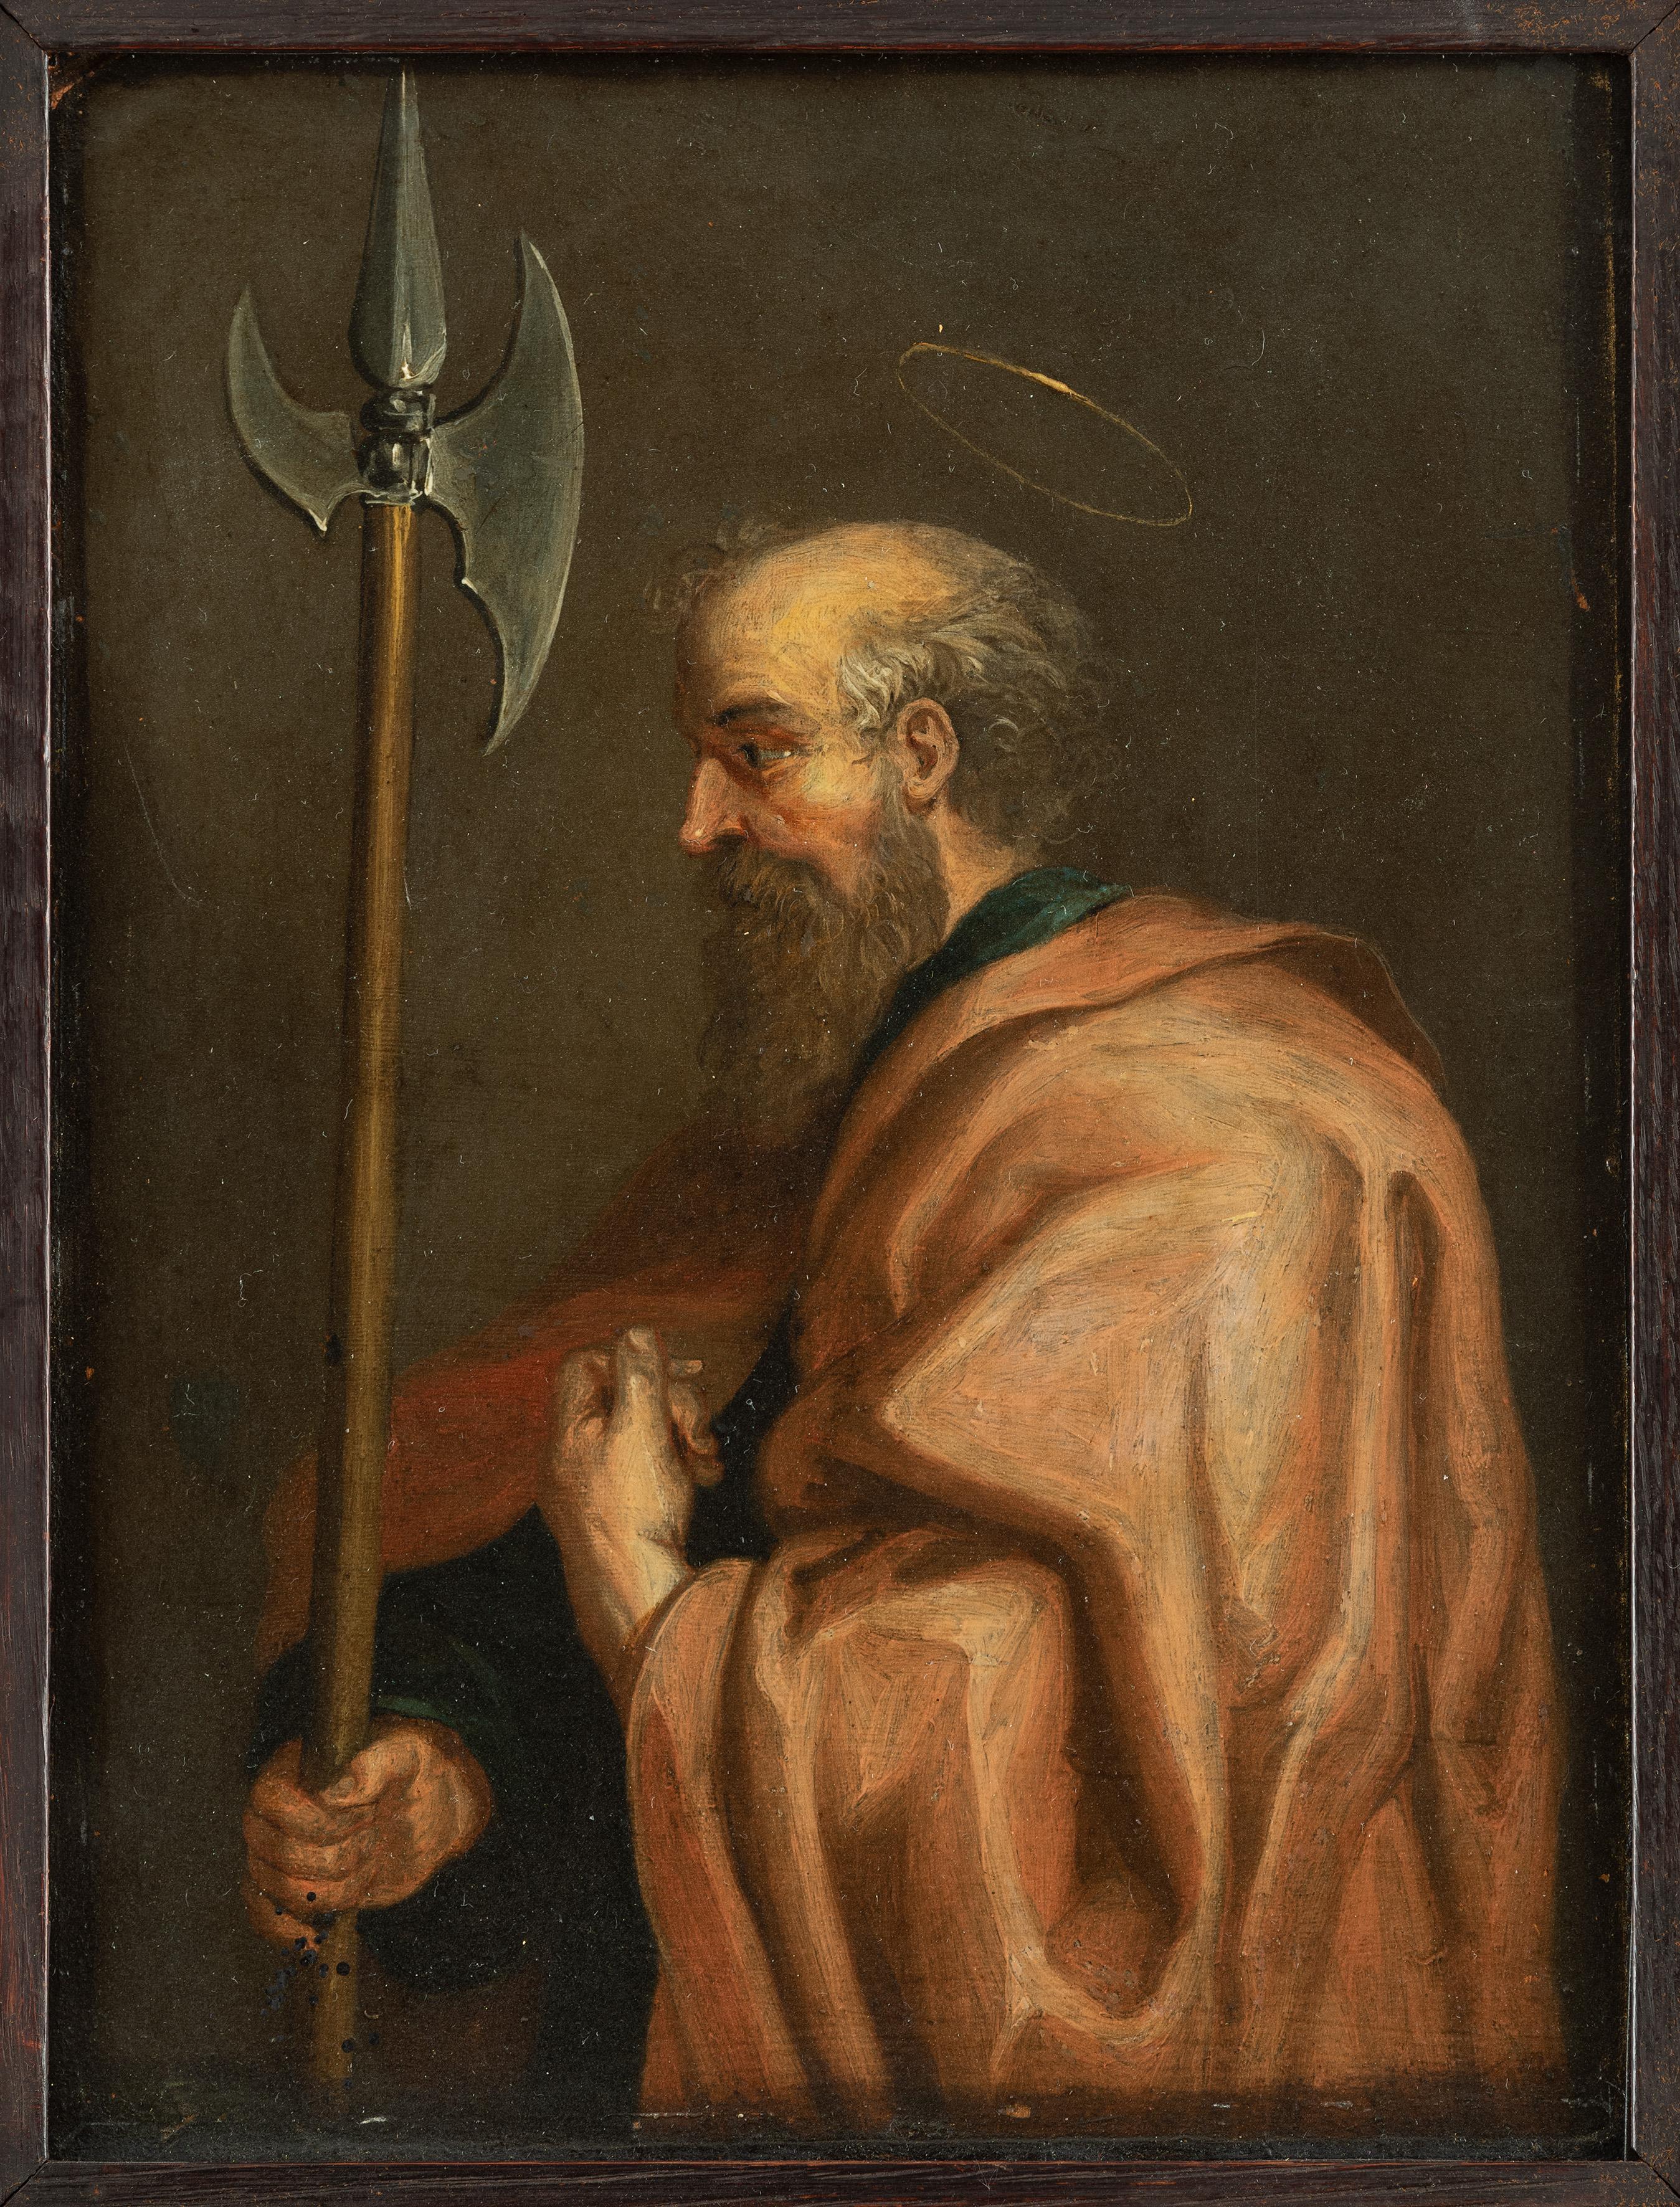 Saint Bartholomew, Flemish School, Old Master Painting, 17th century, Religious  3